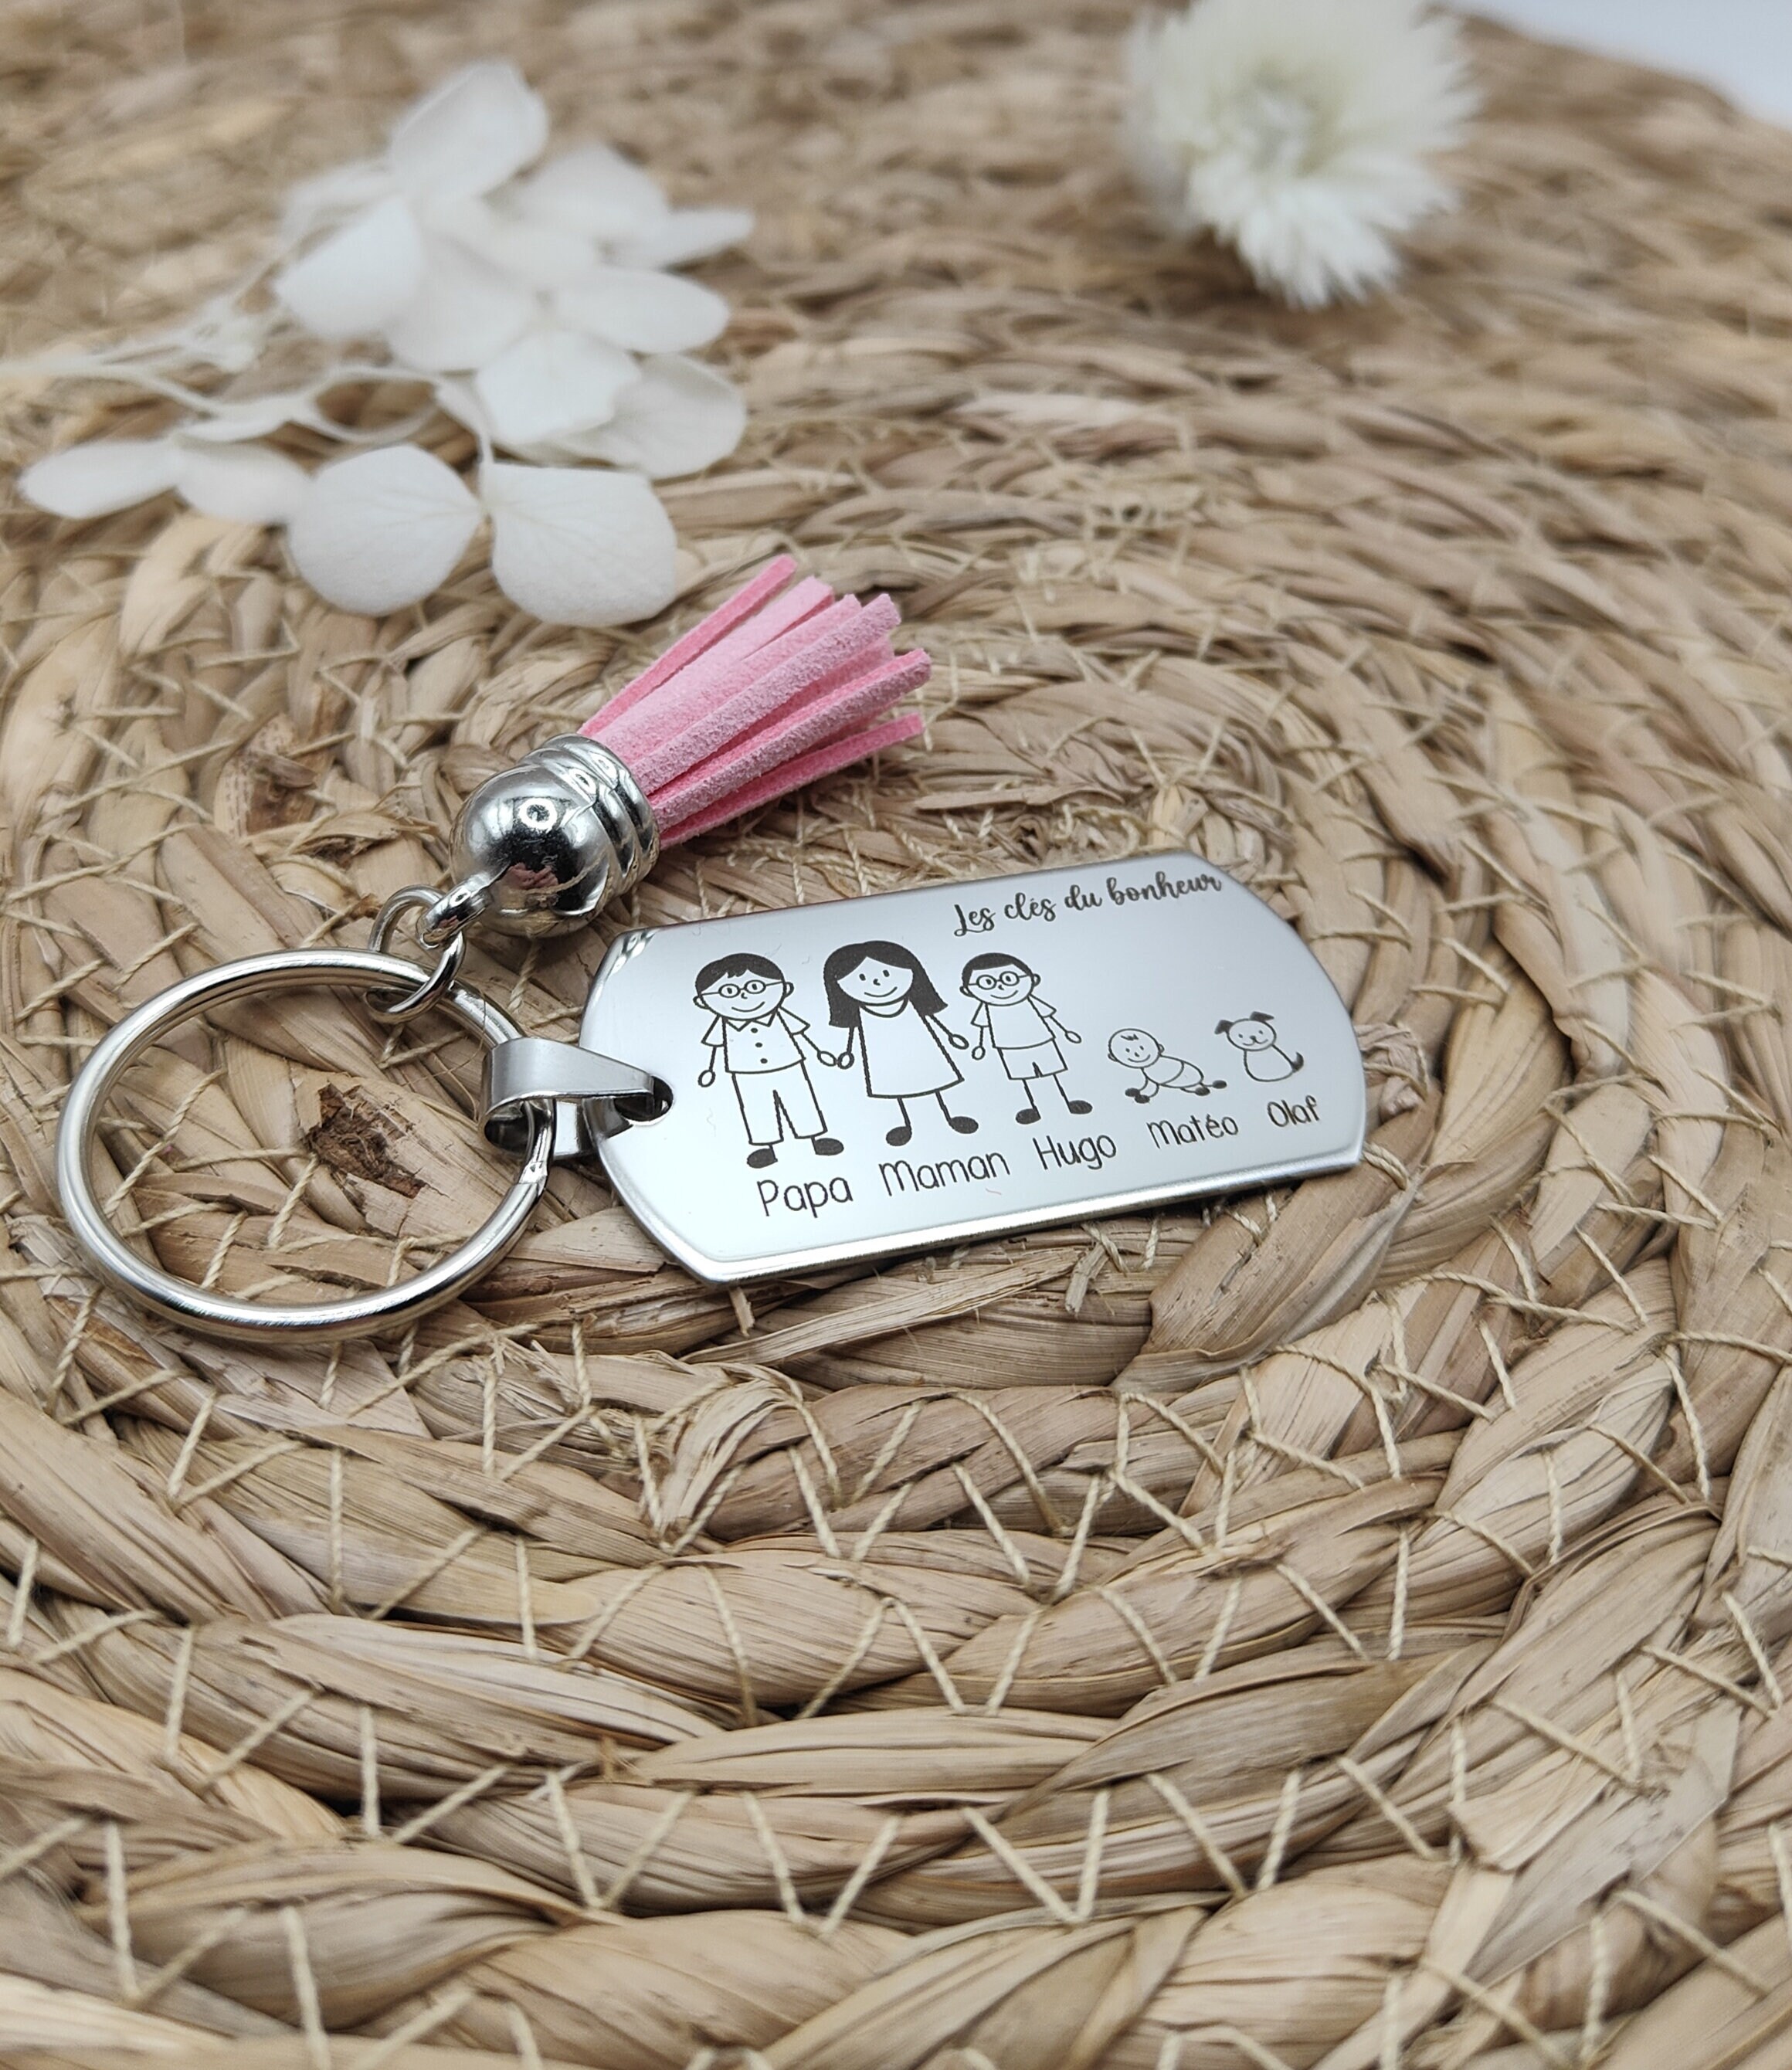 Porte clé personnalisé gravé famille en inox arbre de vie - Porte clés en  inox - creationsdere